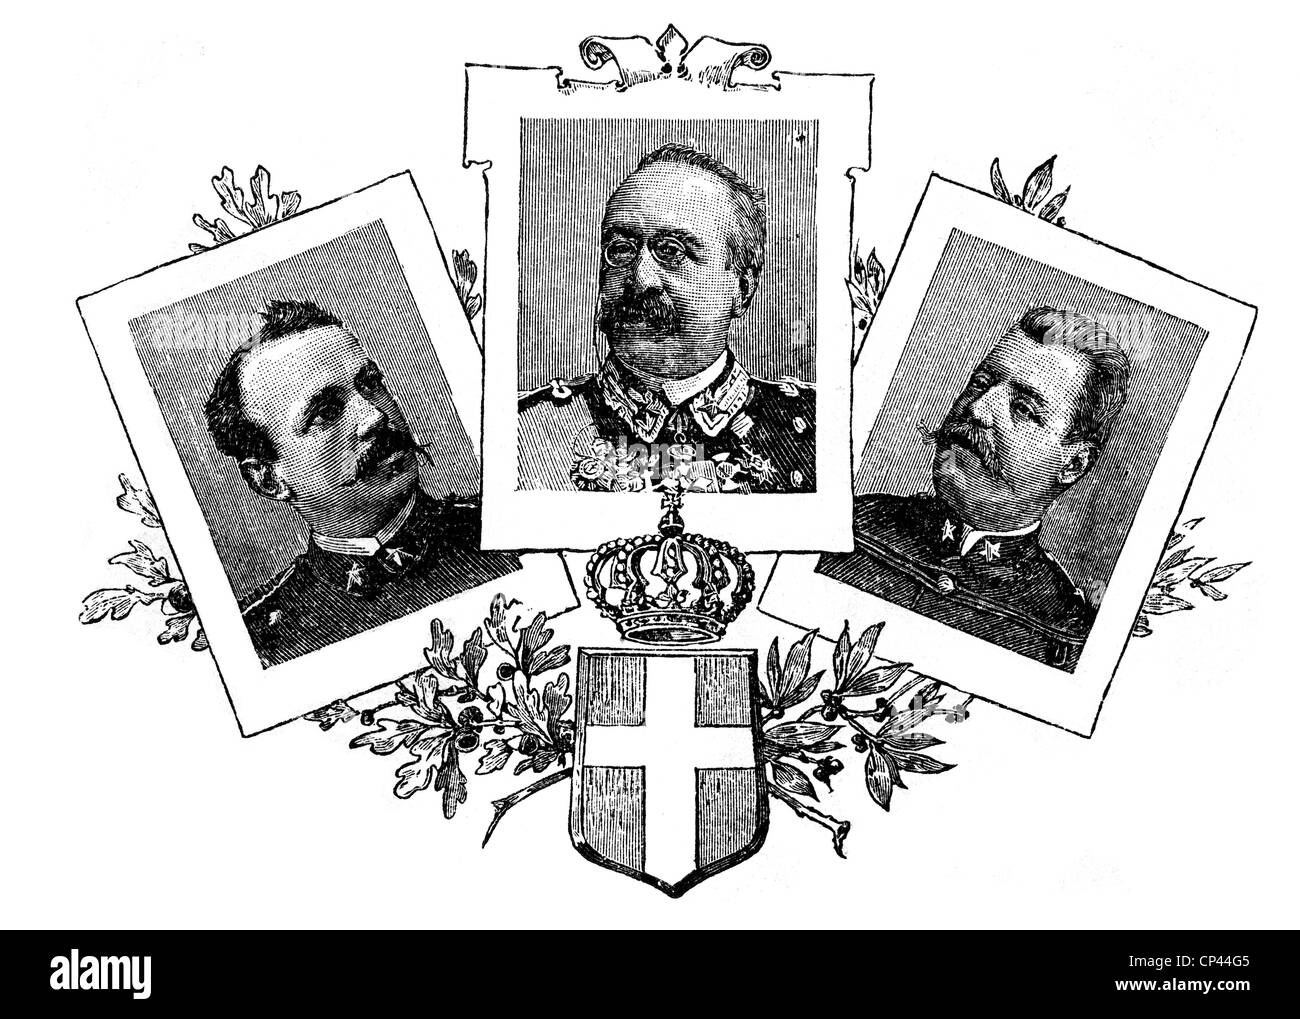 Baratieri, Oreste, 13.11.1841 - 8.8.1901, italienischer General, Porträt, mit Porträts zweier weiterer Offiziere, die am Ersten Italo-Äthiopischen Krieg teilnahmen, Holzgravur, Ende des 19. Jahrhunderts, Stockfoto